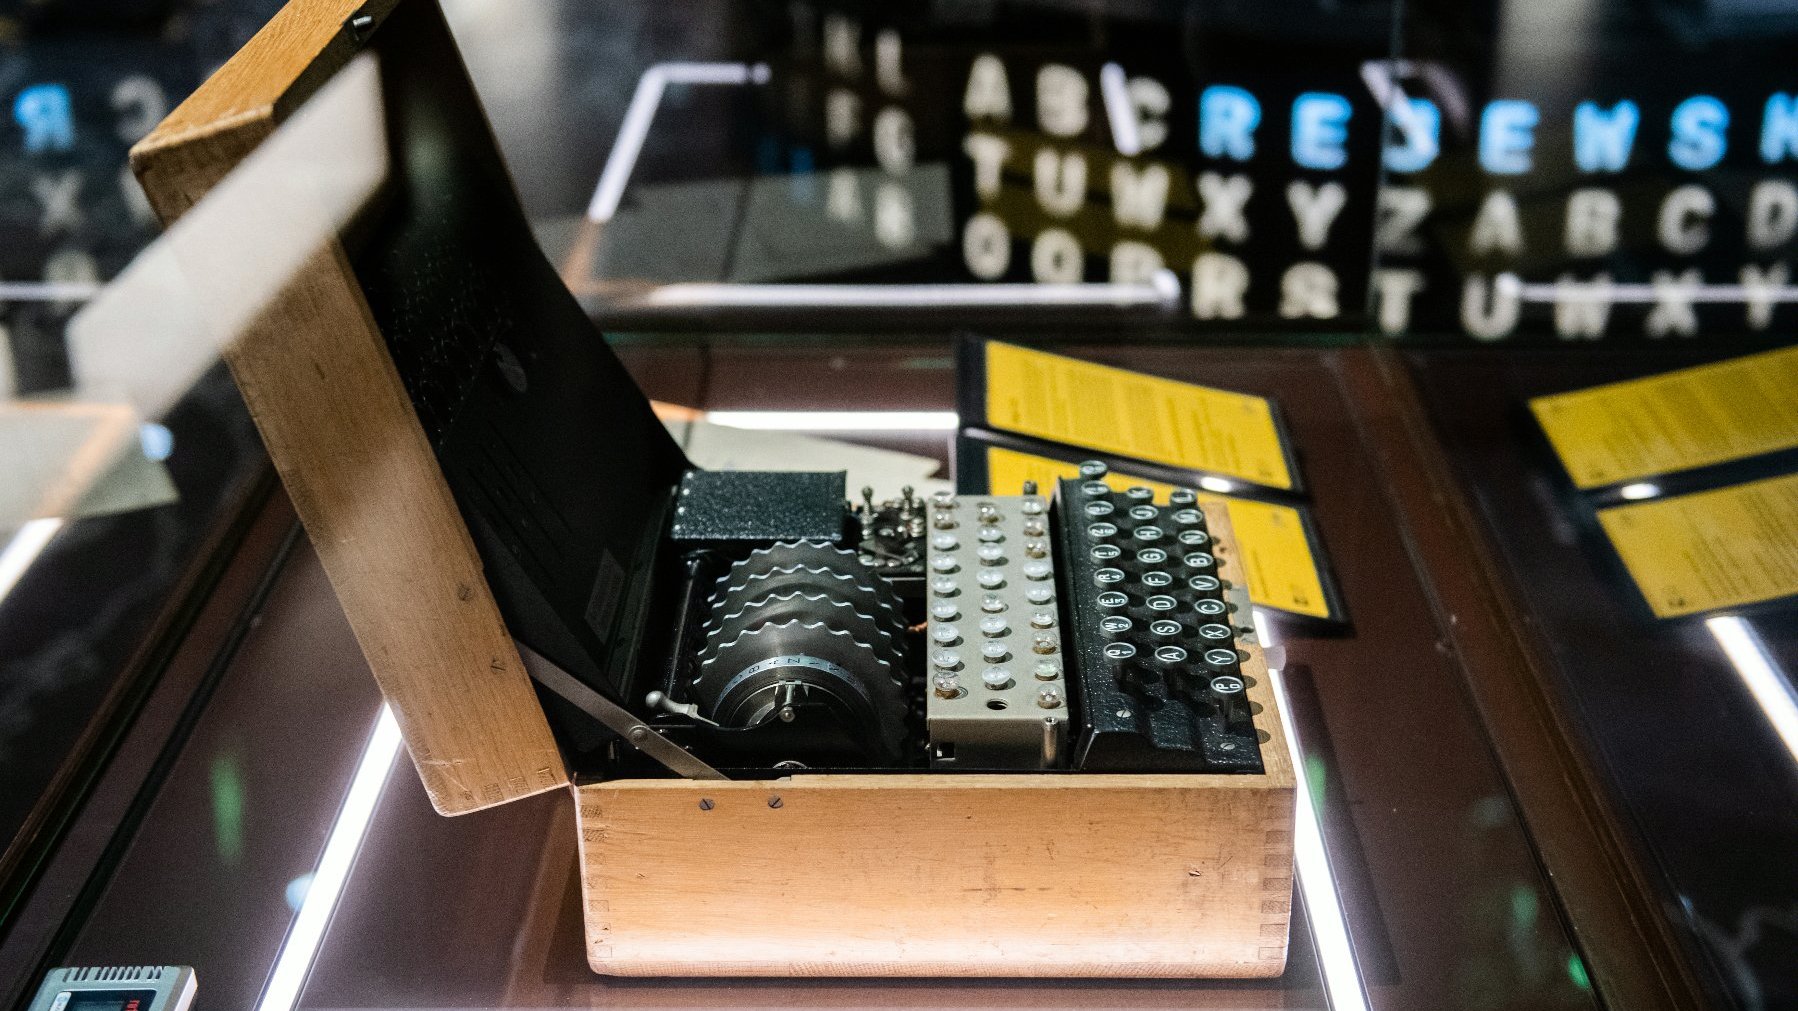 Zdjęcie przedstawia niemiecką maszynę szyfrującą Enigma umieszczoną w gablocie. Obok urządzenia widać dwie tabliczki informacyjne z opisem.